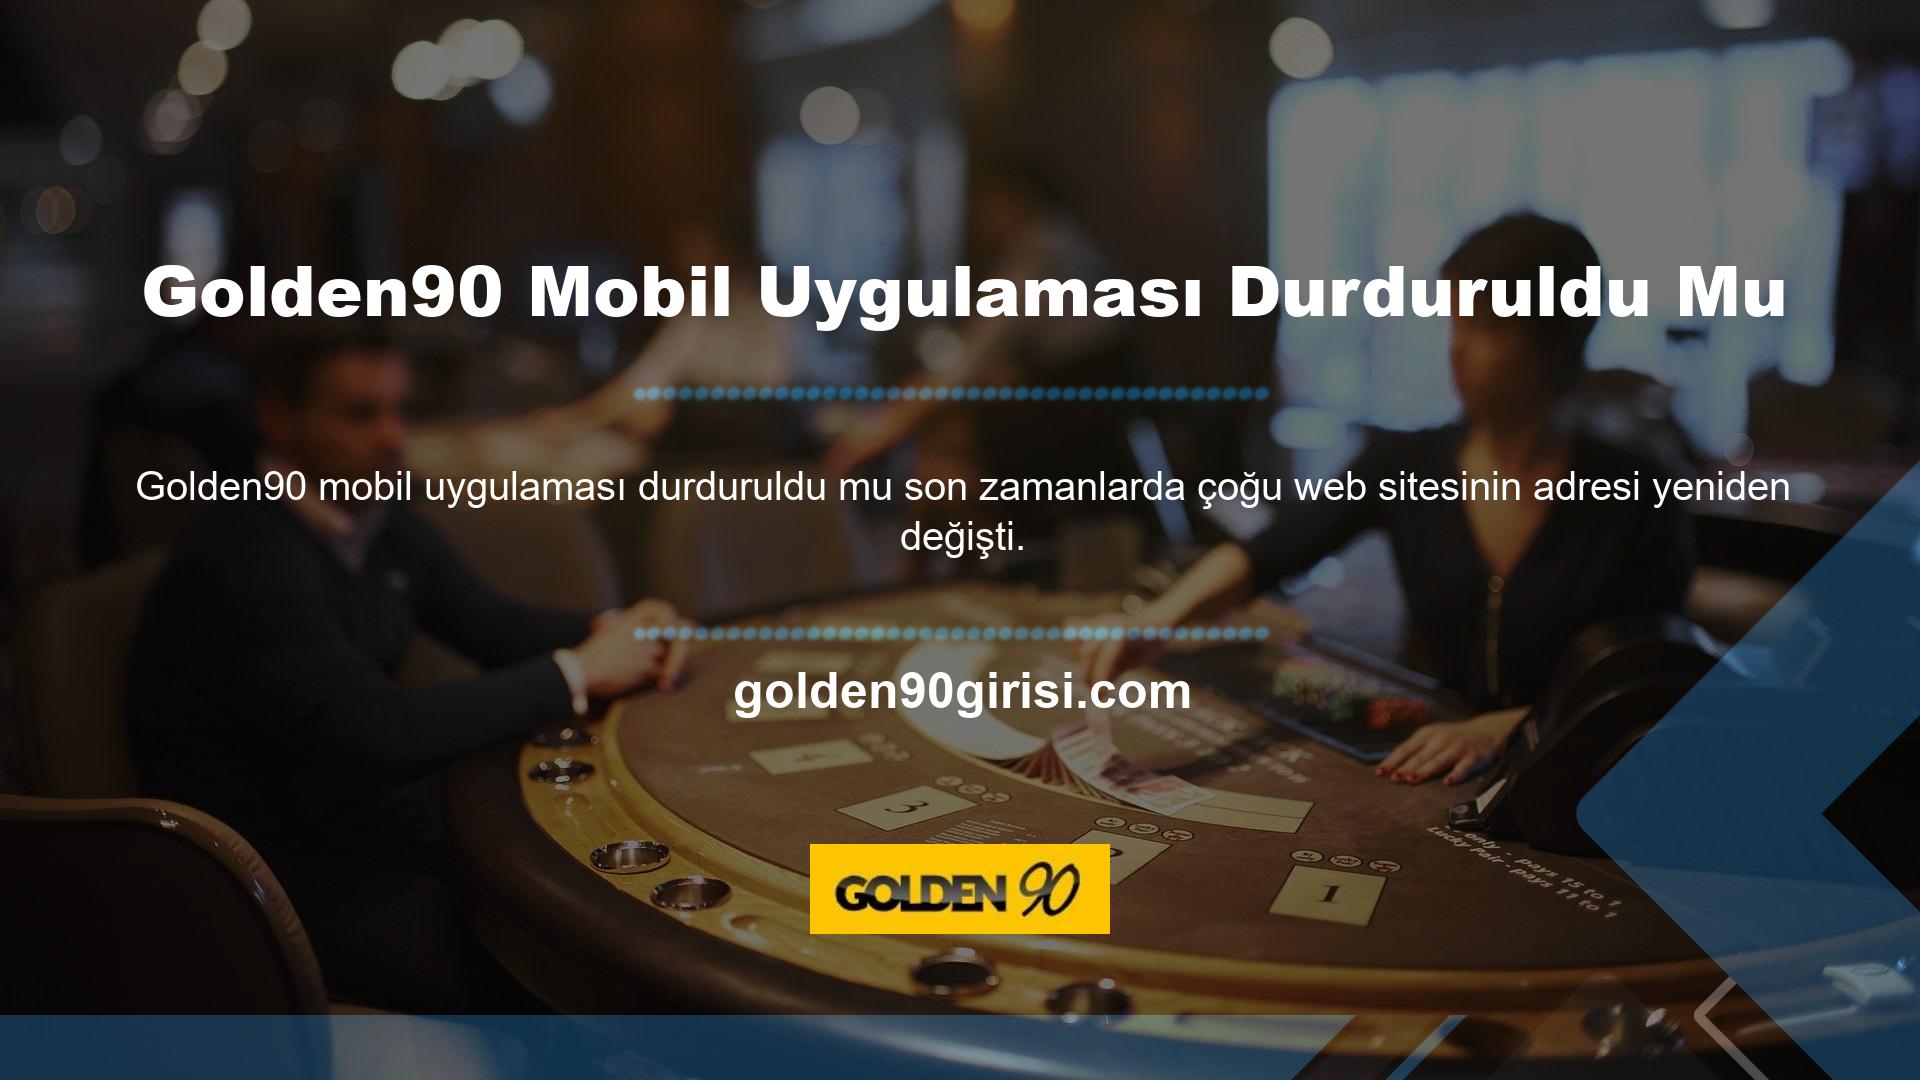 Bunlardan biri de Golden90 yerine Golden90 adreslerini kullanmaya başlayan Golden90 casino sitesiydi